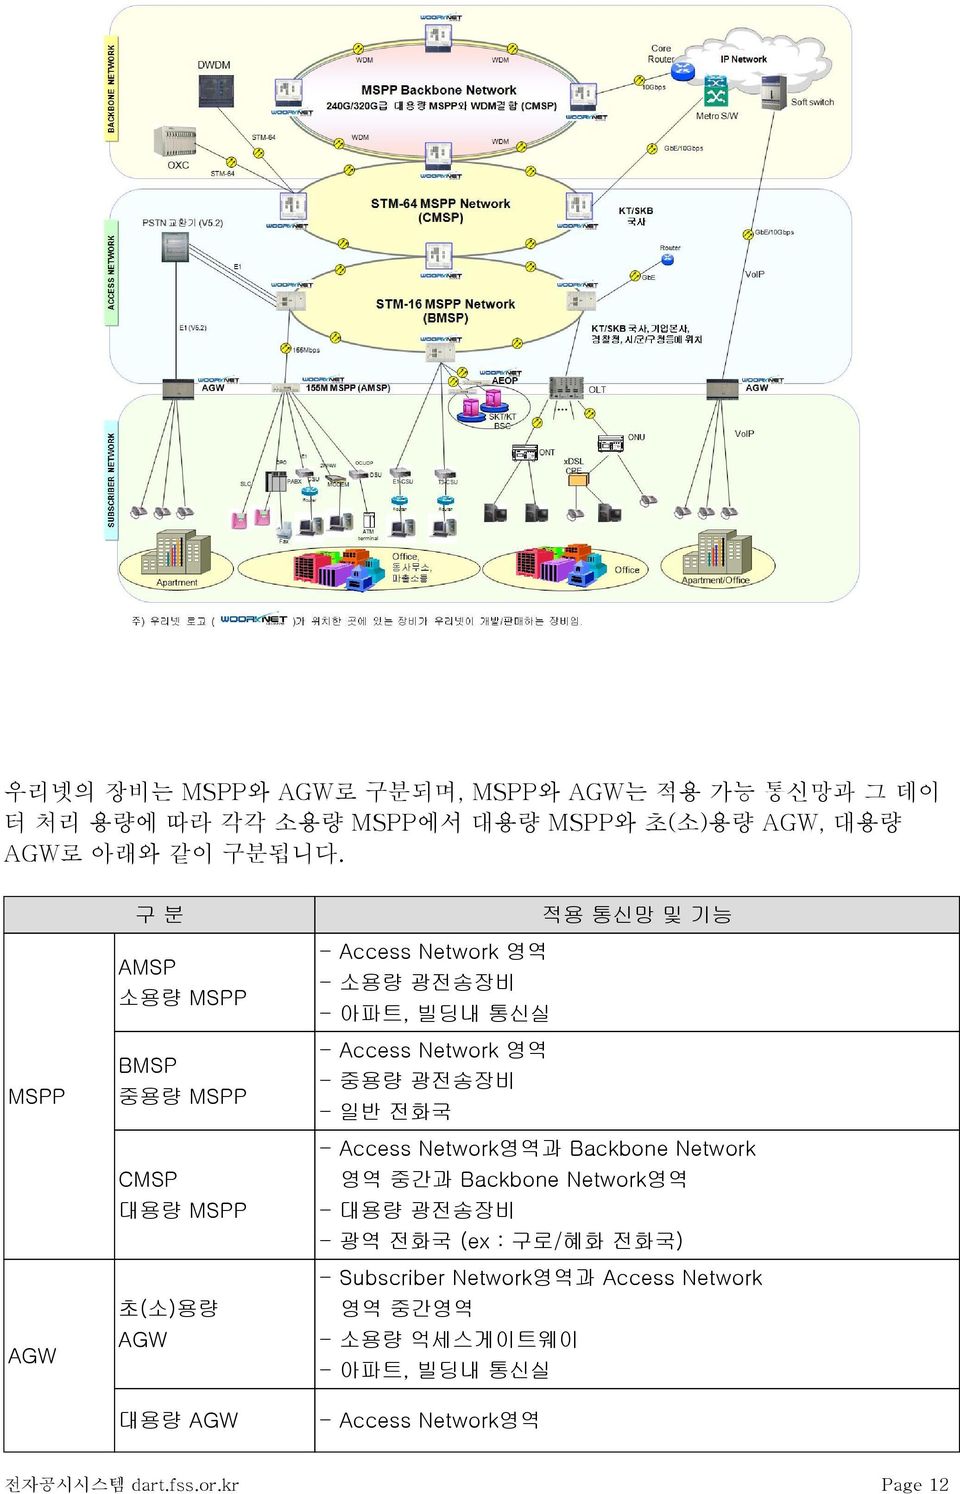 통신실 - Access Network 영역 - 중용량 광전송장비 - 일반 전화국 - Access Network영역과 Backbone Network 영역 중간과 Backbone Network영역 - 대용량 광전송장비 - 광역 전화국